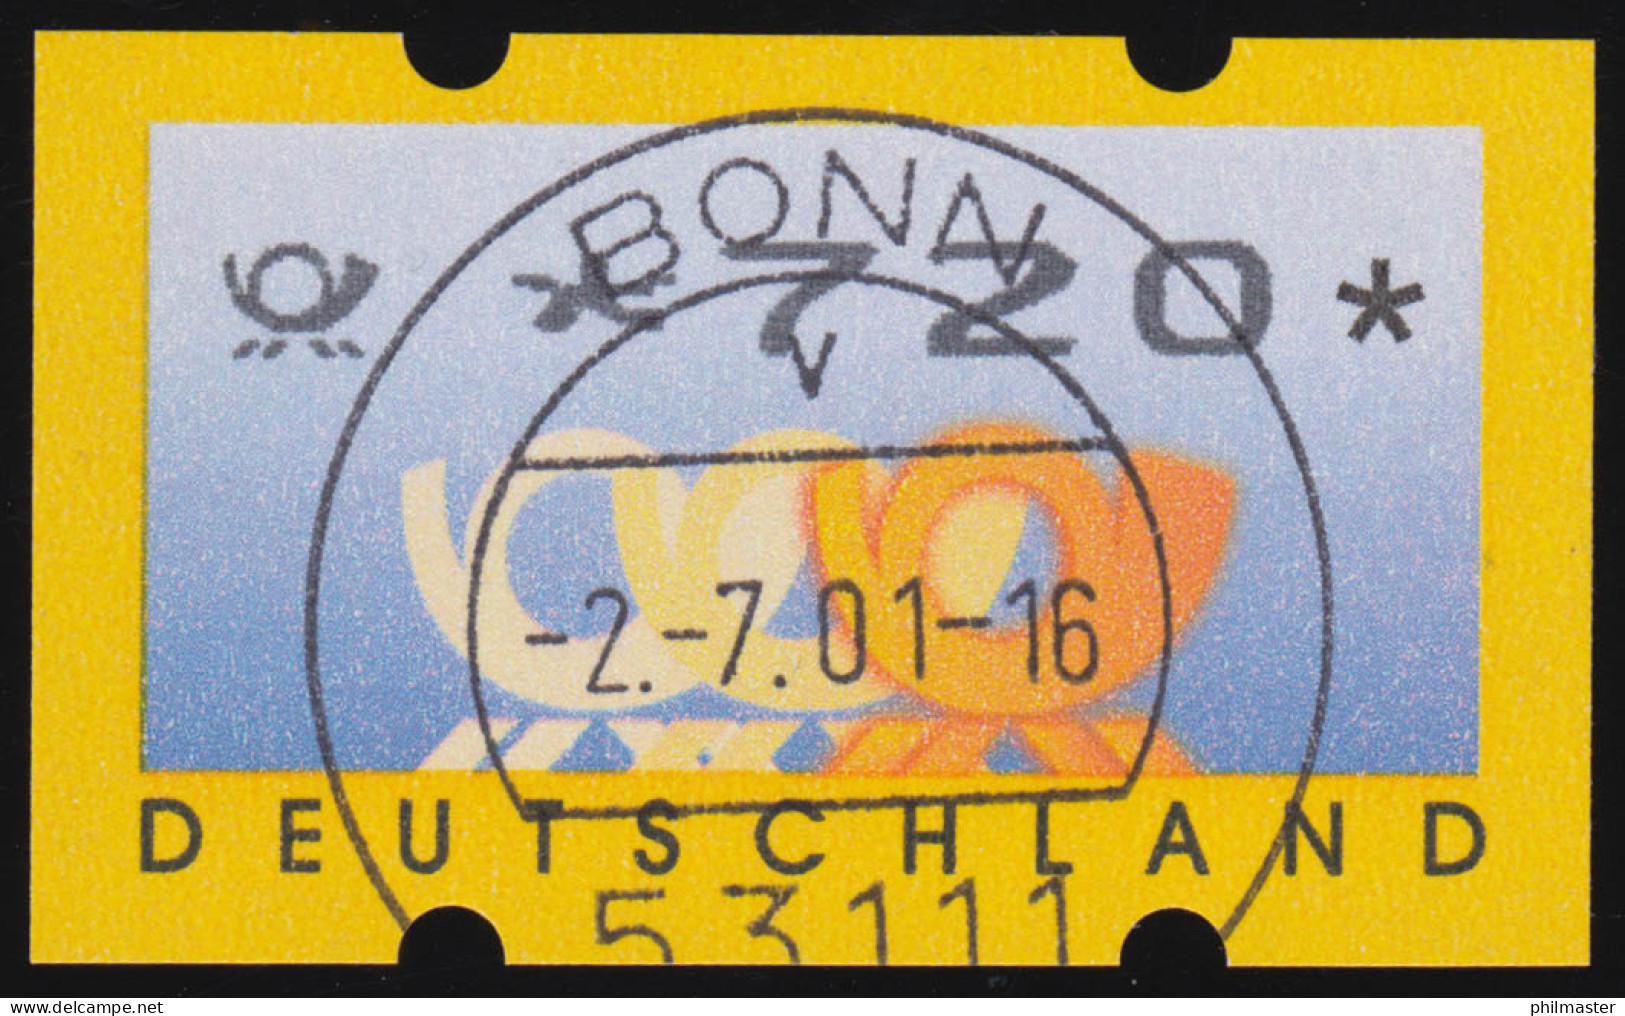 3.3 Posthörner Sielaff Ergänzungswert 720 Mit ET-O Bonn 2.7.2001 - Timbres De Distributeurs [ATM]